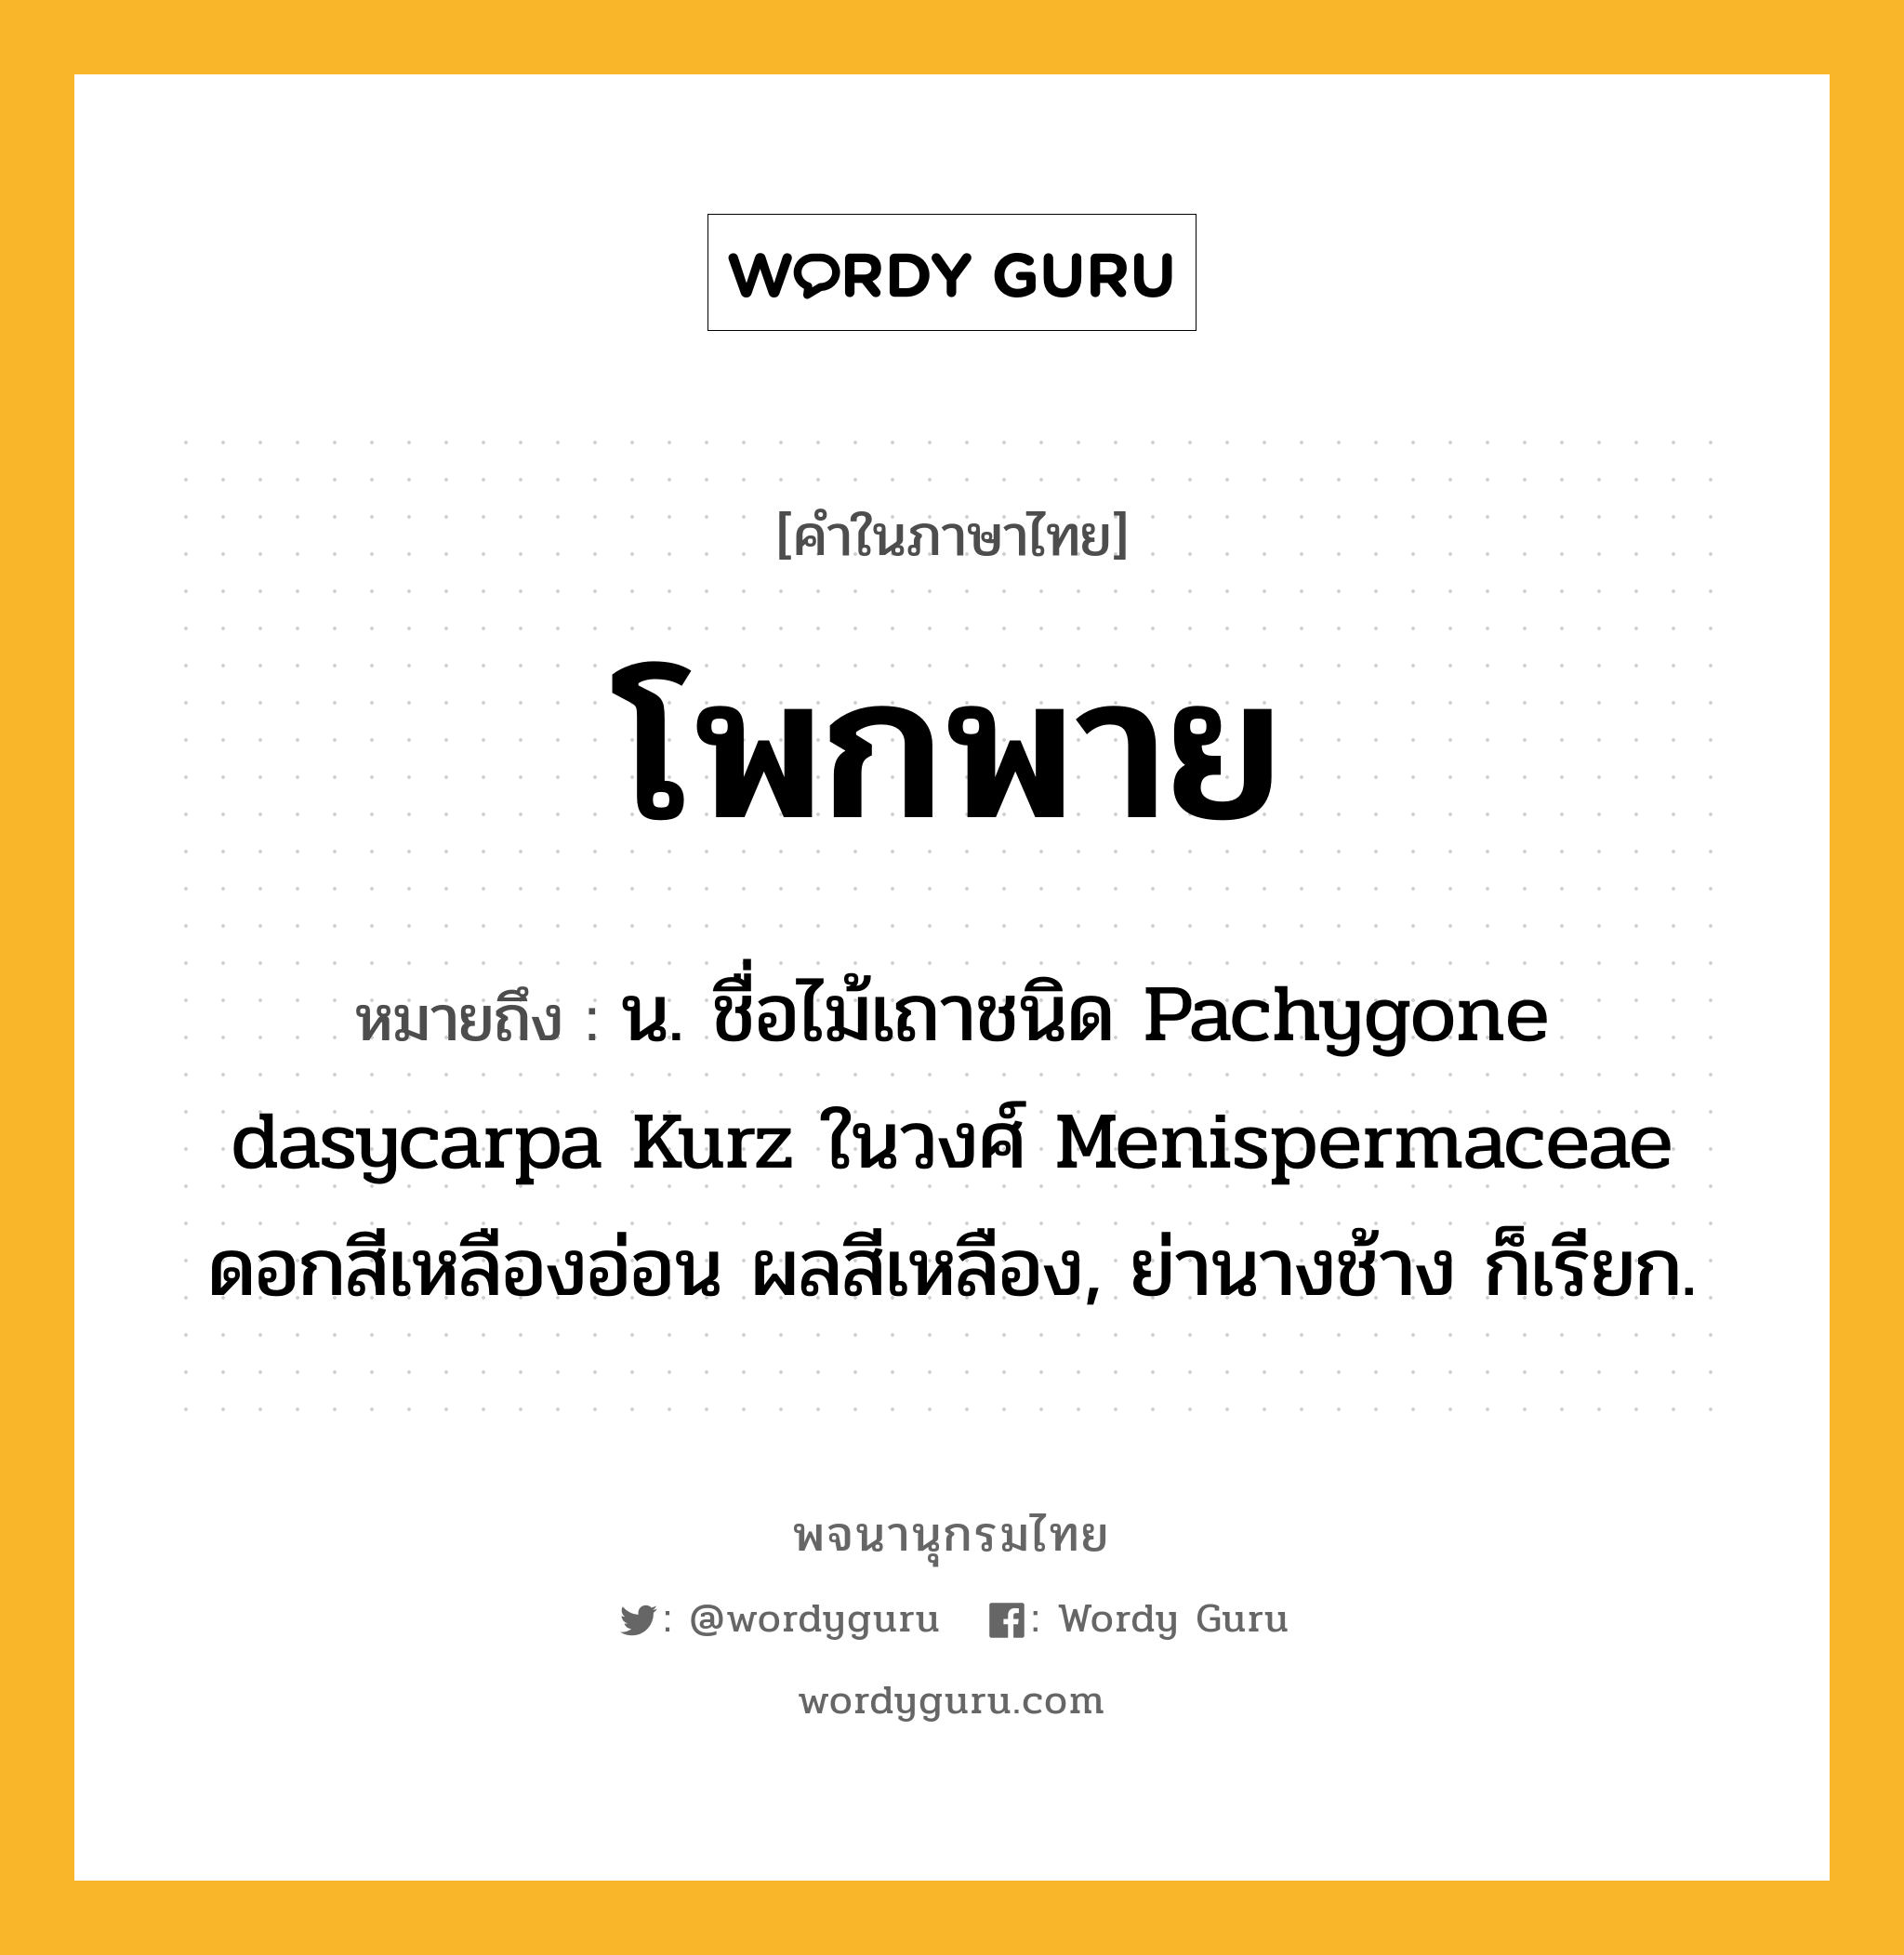 โพกพาย หมายถึงอะไร?, คำในภาษาไทย โพกพาย หมายถึง น. ชื่อไม้เถาชนิด Pachygone dasycarpa Kurz ในวงศ์ Menispermaceae ดอกสีเหลืองอ่อน ผลสีเหลือง, ย่านางช้าง ก็เรียก.